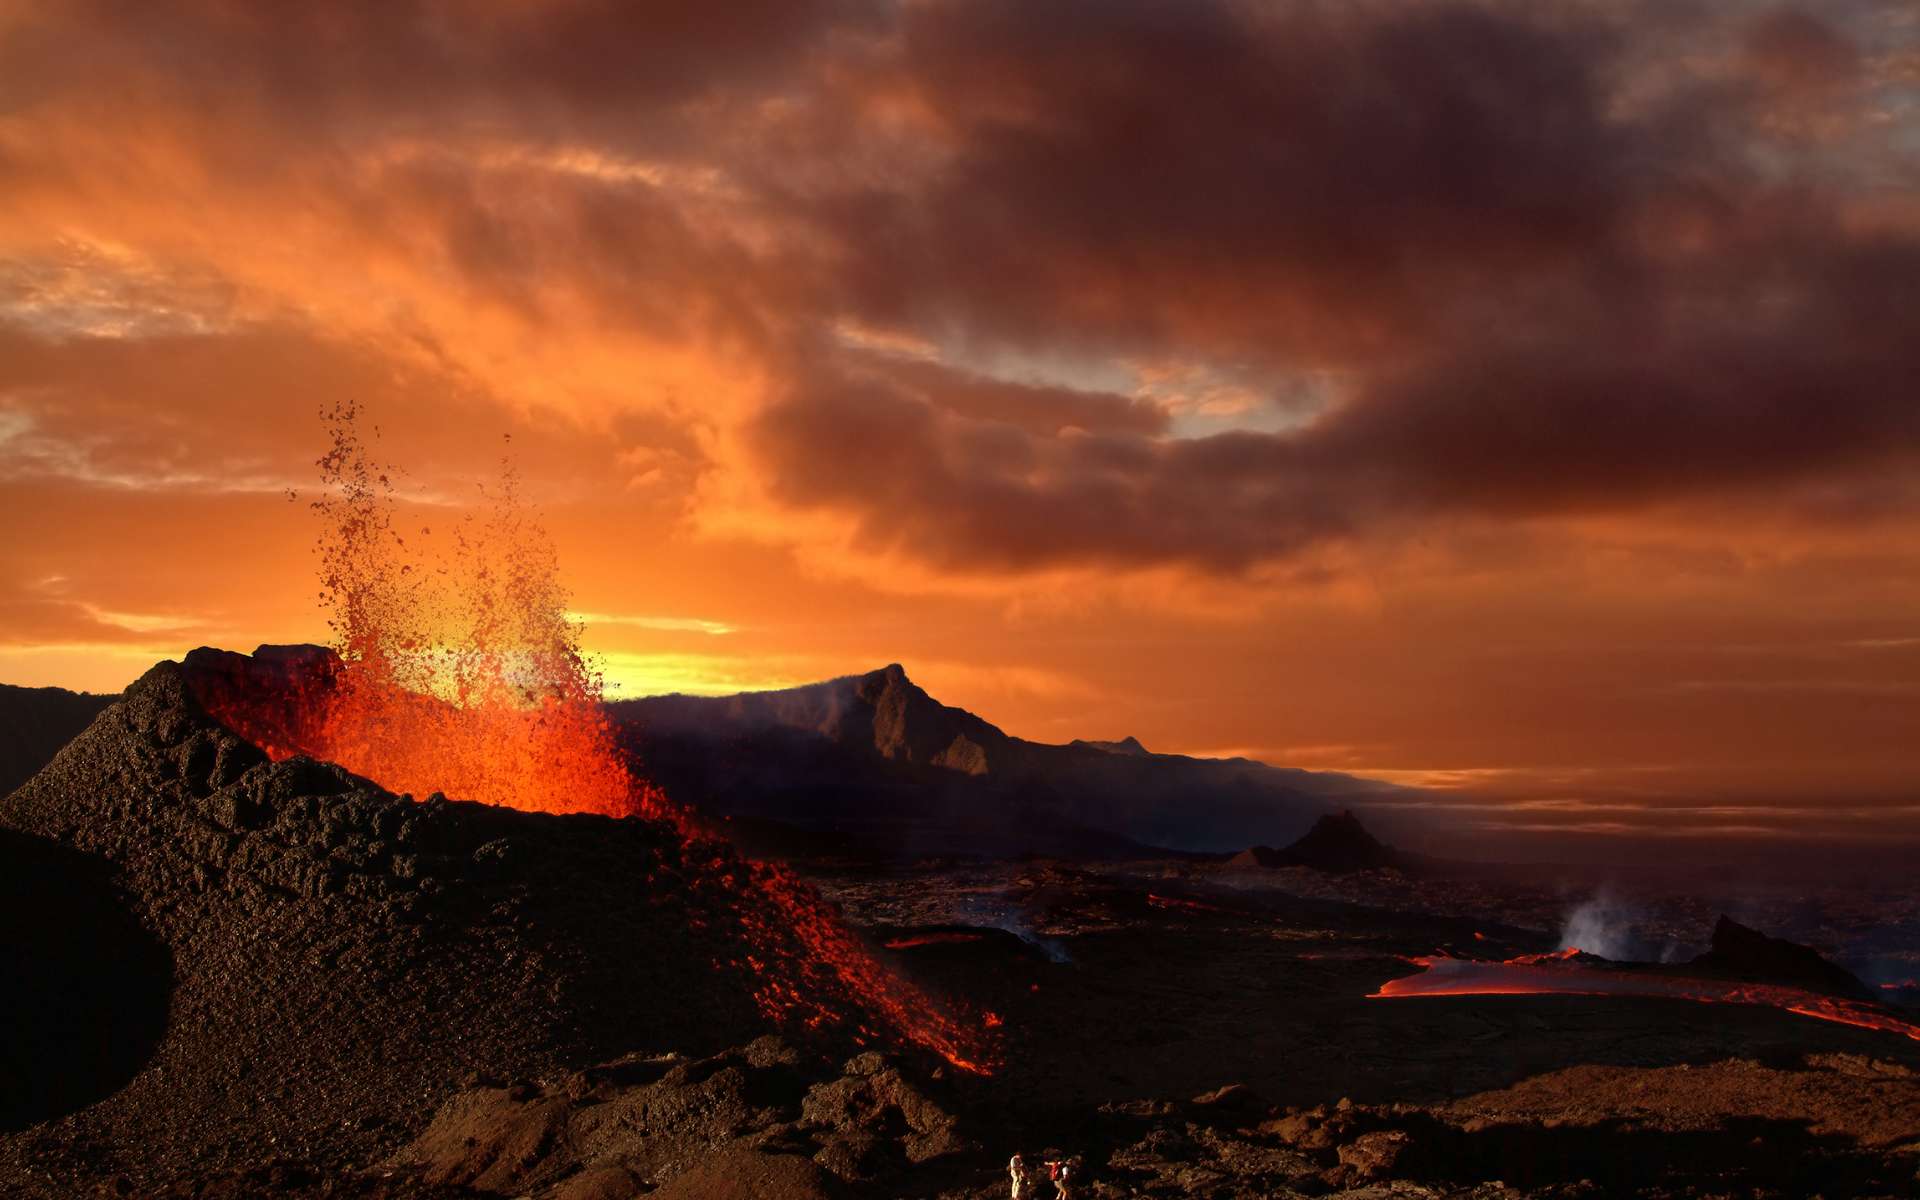 L'éruption du volcan du Piton de la Fournaise s'est intensifiée puis... s'est arrêtée nette ! Voici les plus belles images